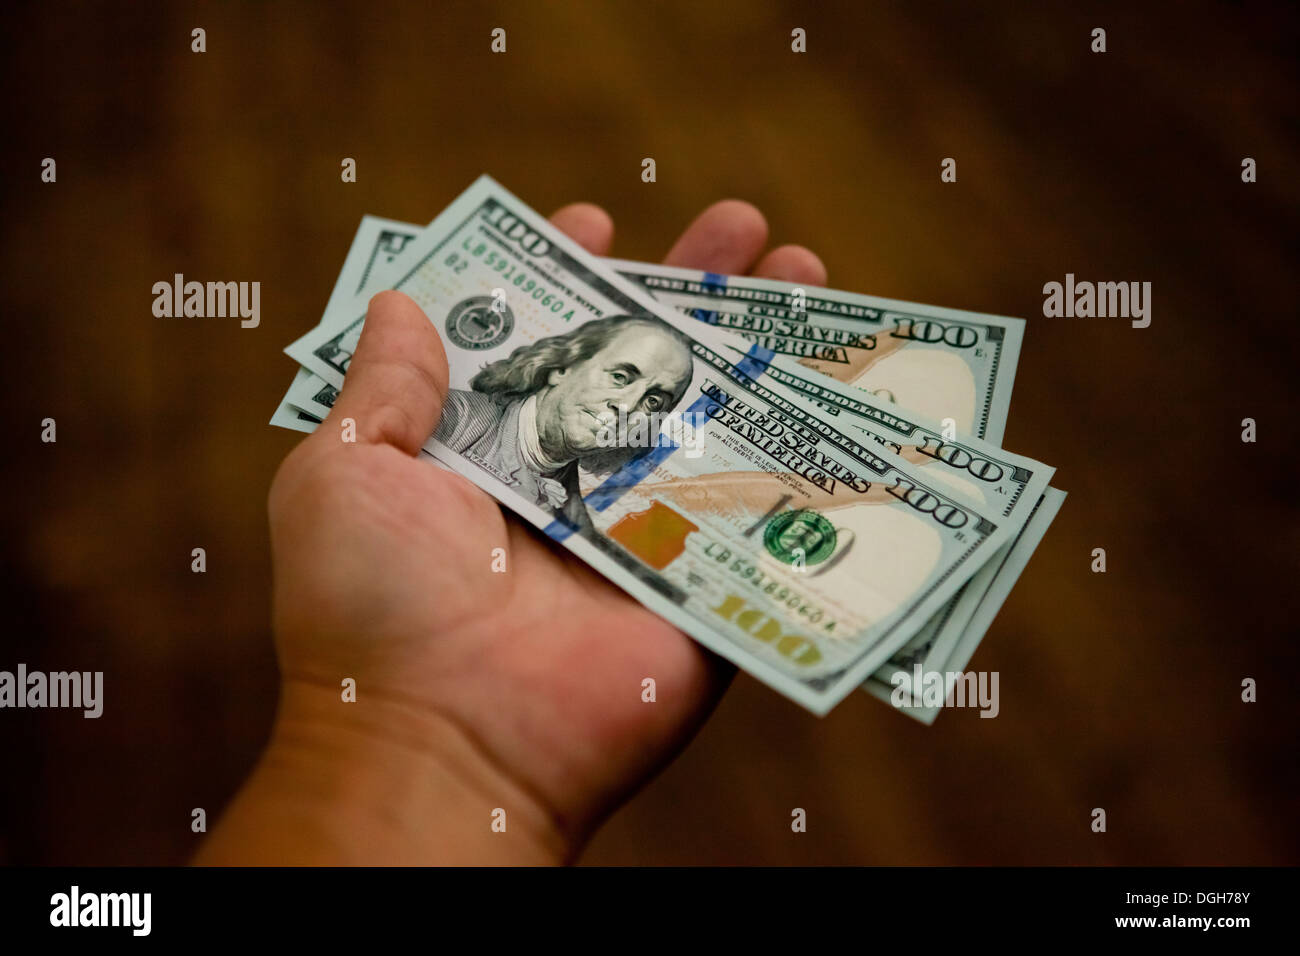 Nouvelle tranche de 100 dollar bills in hand Banque D'Images